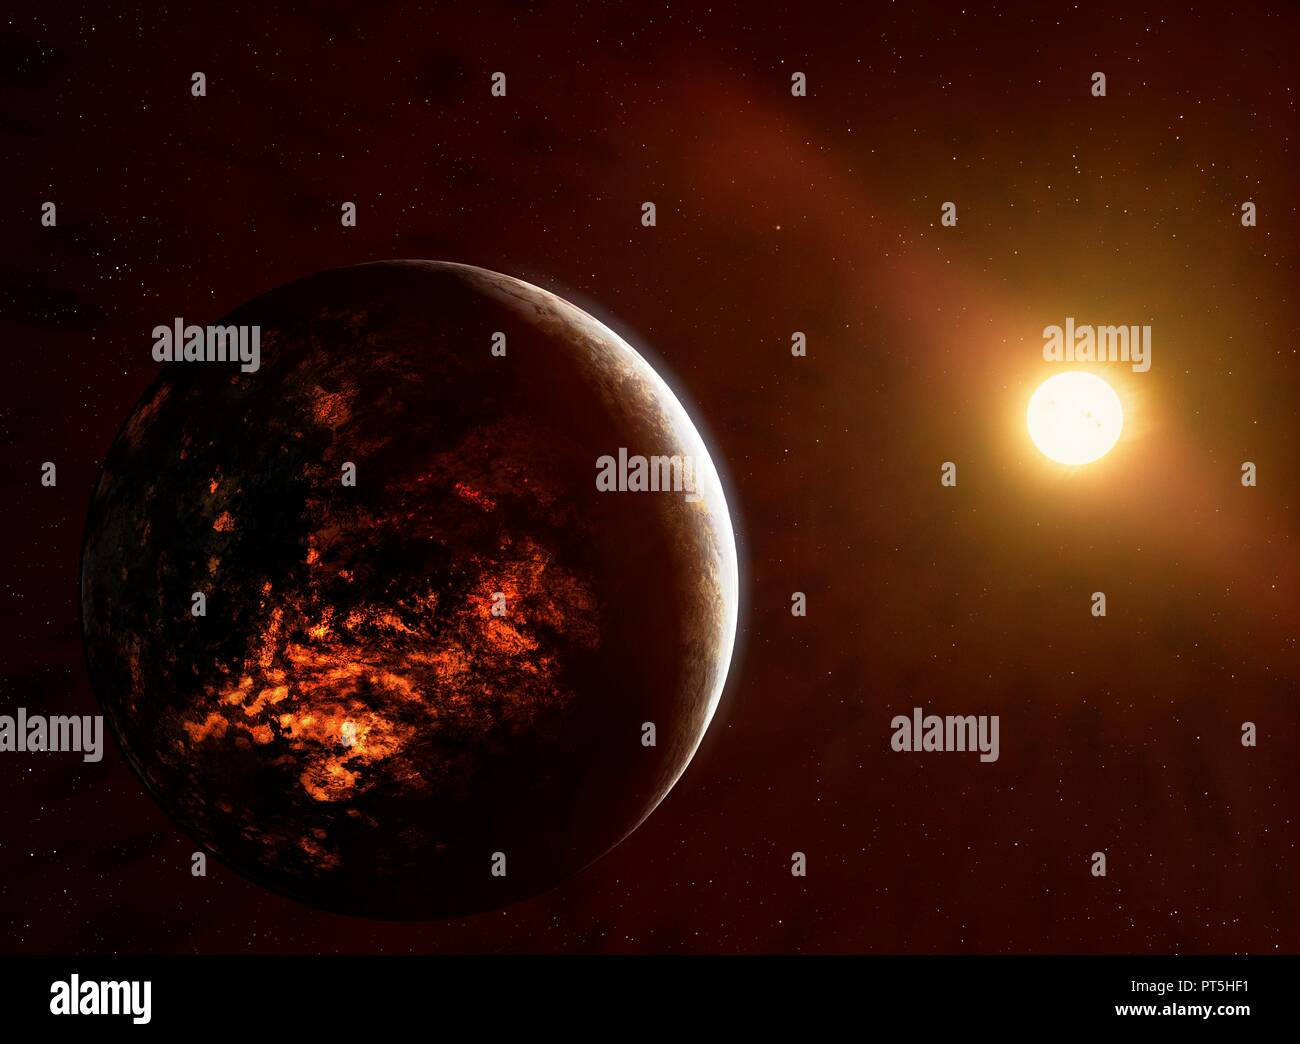 Illustration de la planète 55 Cancri e,également appelé Janssen.C'est une planète géante en orbite autour de 55 Cancri A. Sa masse est estimée à environ 8,6 masses terrestres,permettant une soi-disant "super-Terre".La planète orbite autour de son étoile si étroitement qu'il termine une orbite en moins de 18 heures.La proximité de son étoile - seulement 0.015 unités astronomiques,ou 1 20e de l'Mercury-Sun - séparation signifie que la planète est exceptionnellement chaud et tendance,volcanique que cette représentation montre. Banque D'Images